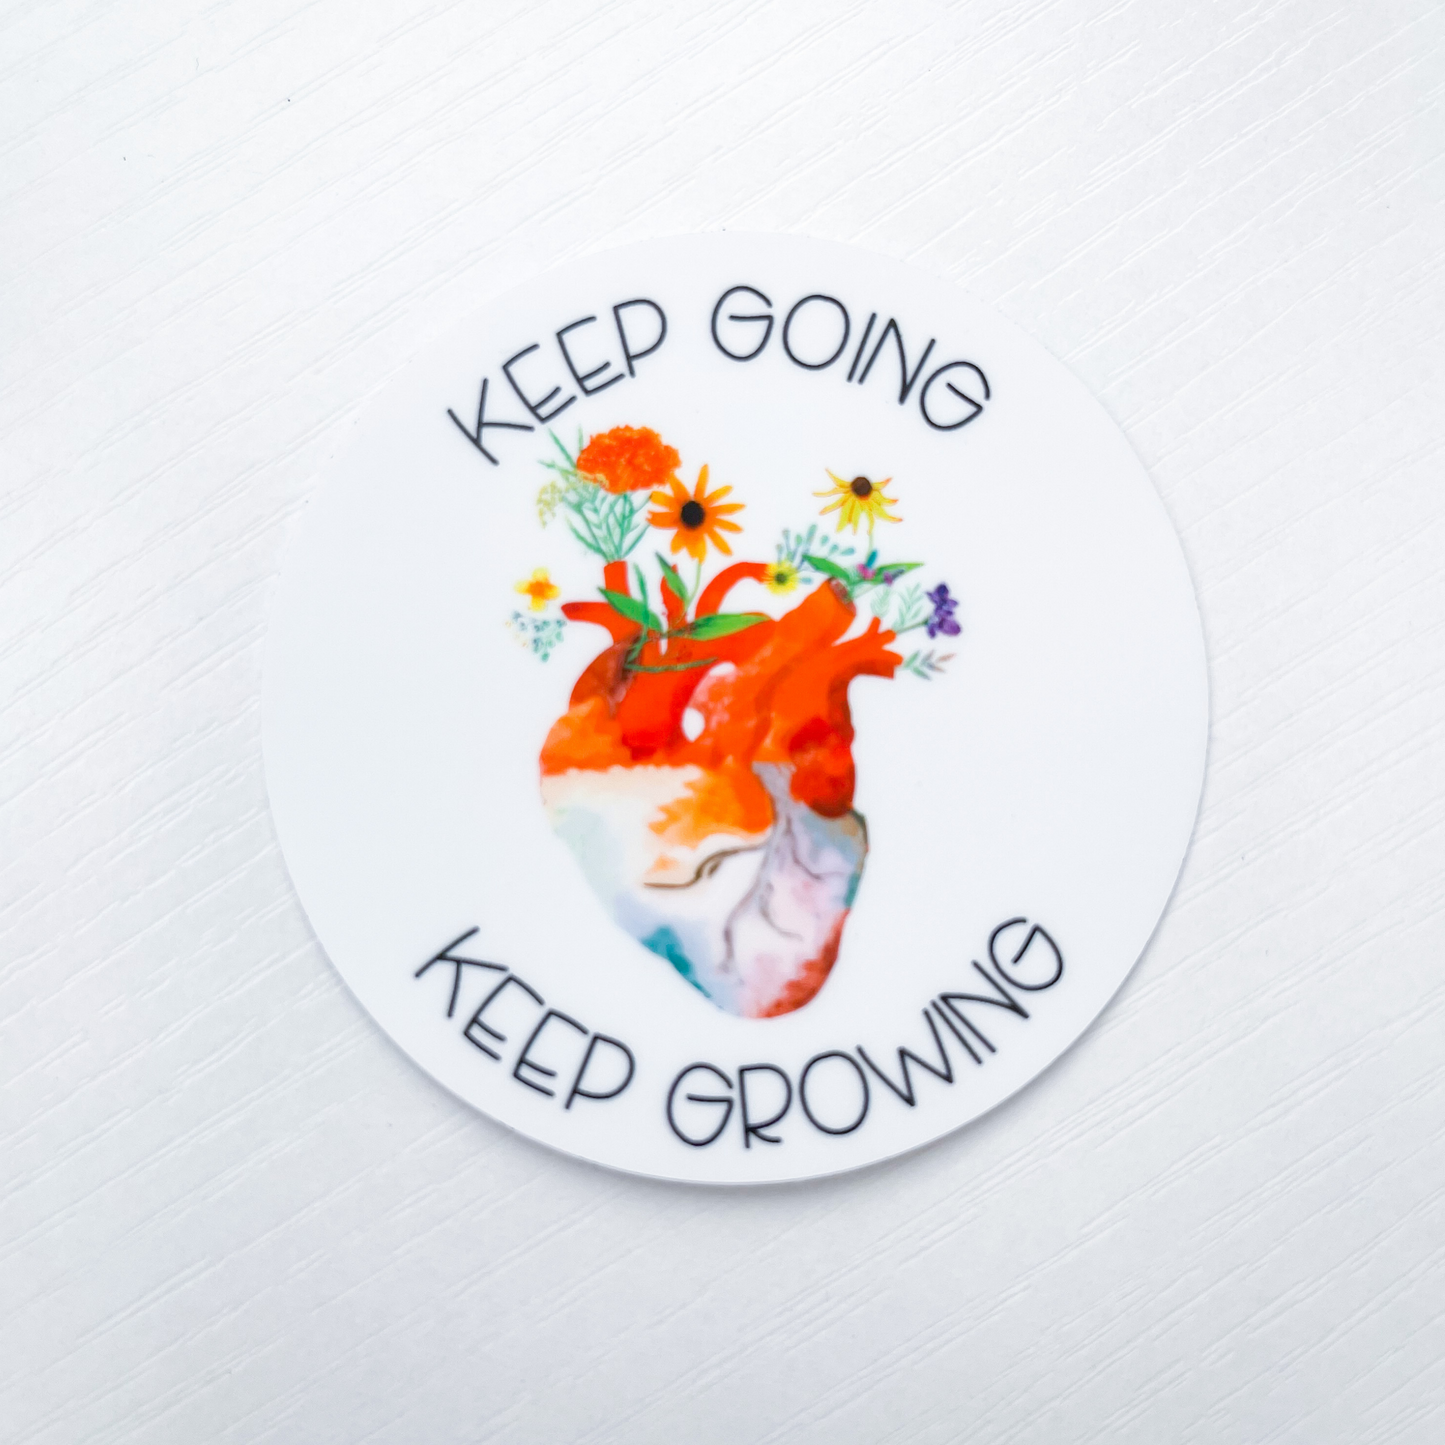 Keep Going Keep Growing Heart Circle Sticker